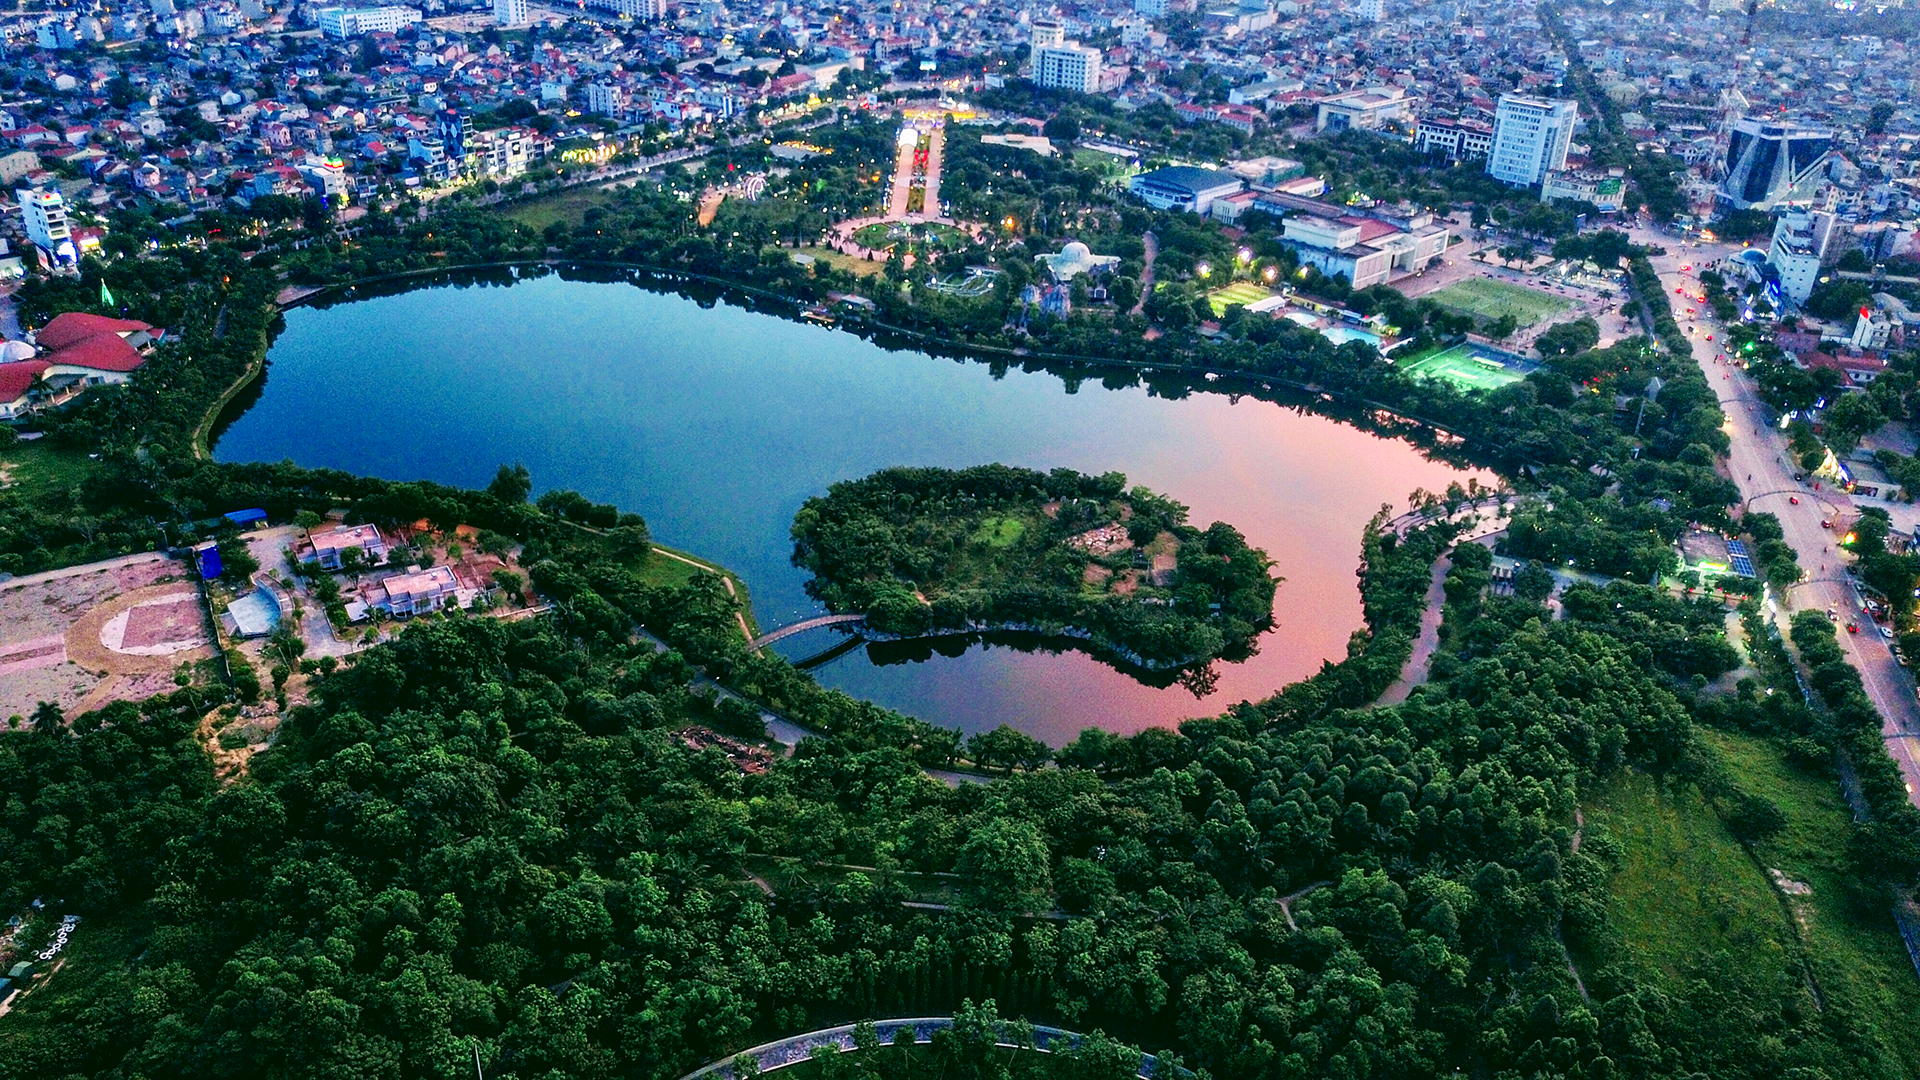 Hồ điều hòa thuộc Công viên Trung tâm có khung cảnh đẹp. Ảnh: Devi Nguyễn